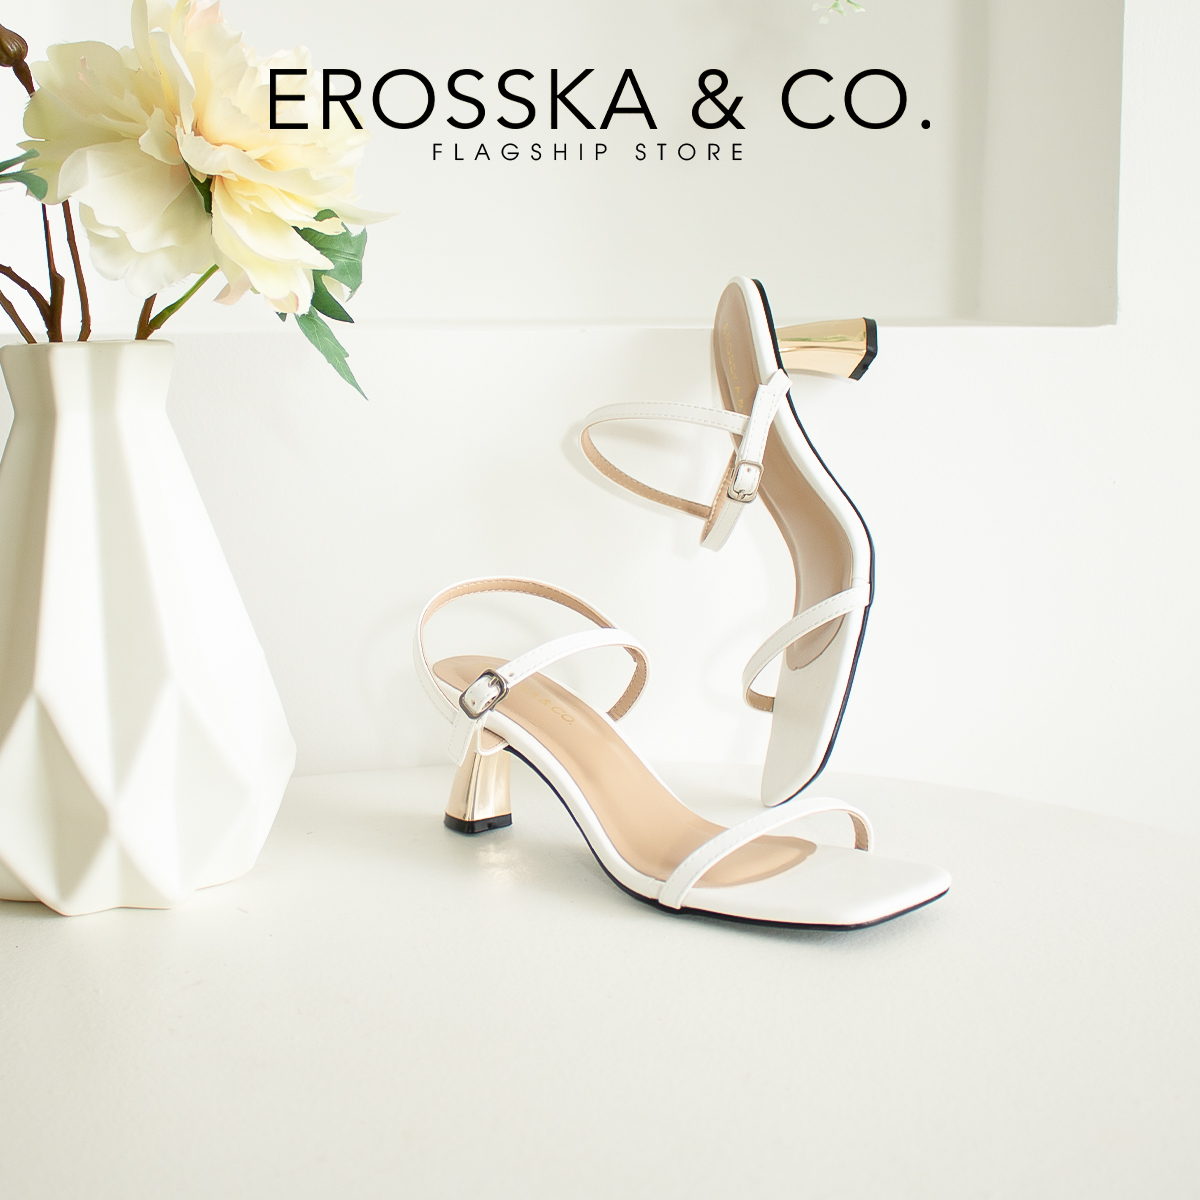 Erosska - Giày sandal cao gót nhọn kiểu dáng Hàn Quốc cao 5cm _ EB046